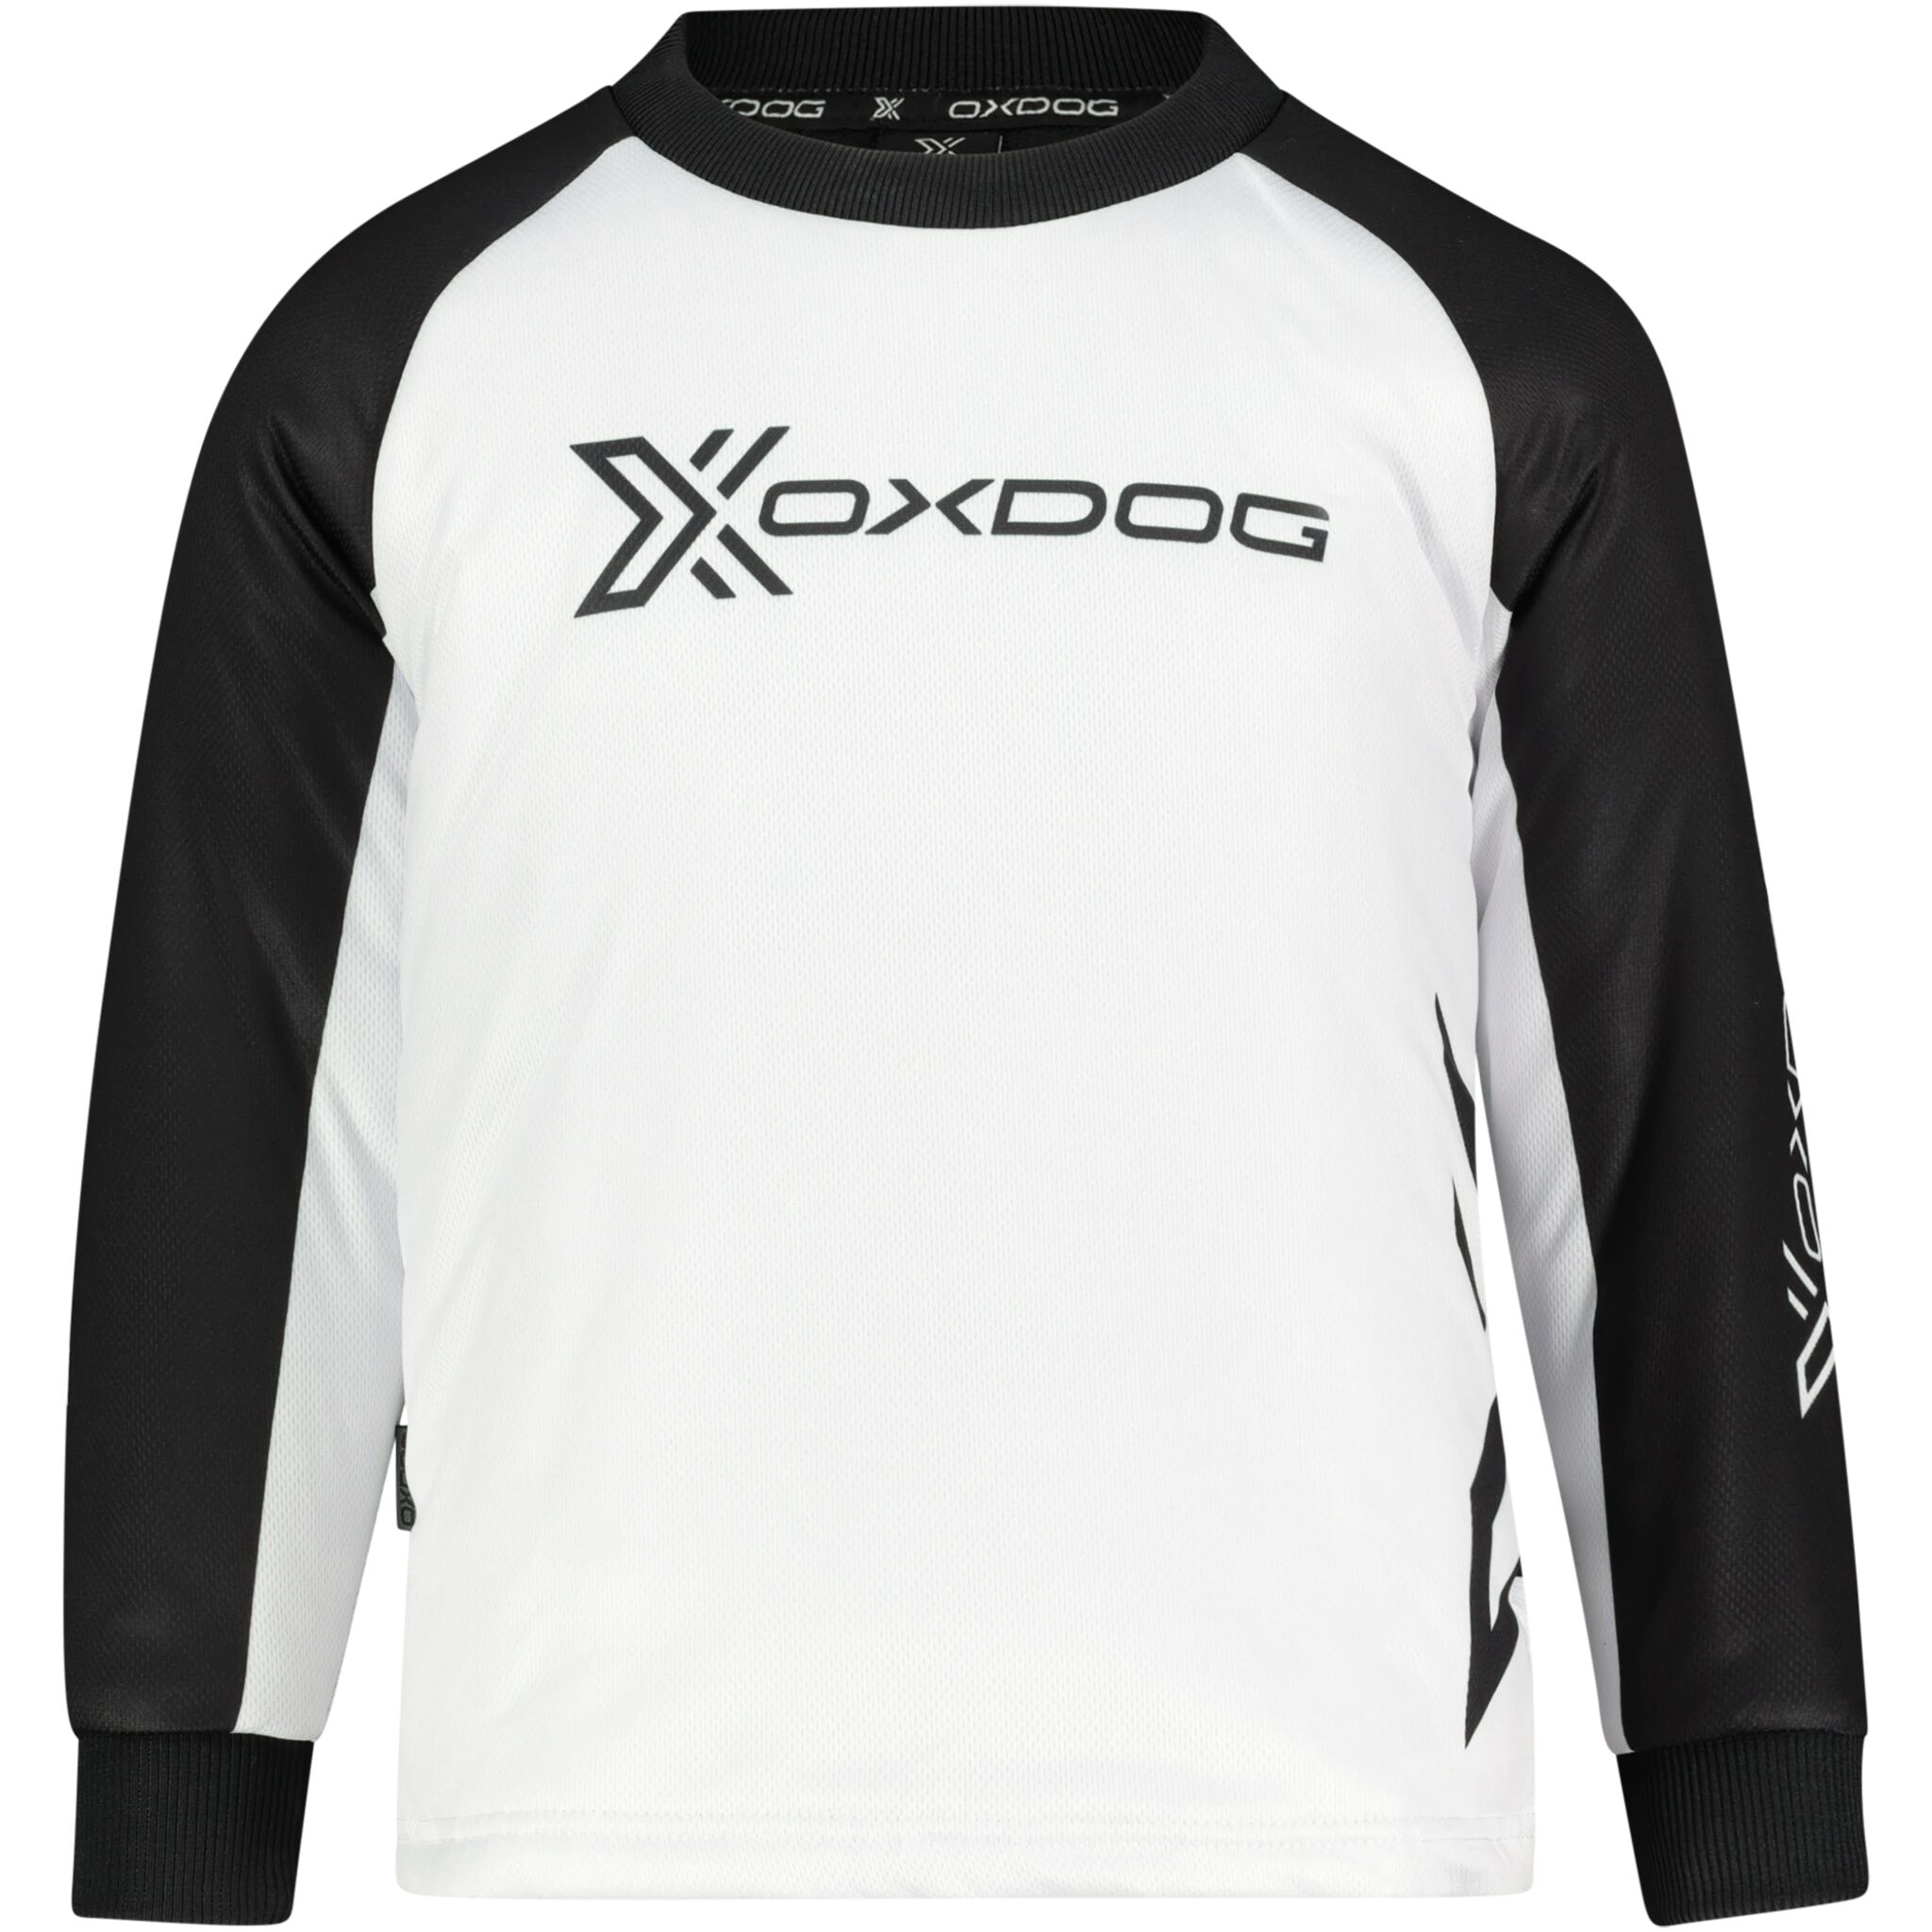 Oxdog Xguard Goalie Shirt, treningstrøye junior S BLACK/WHITE